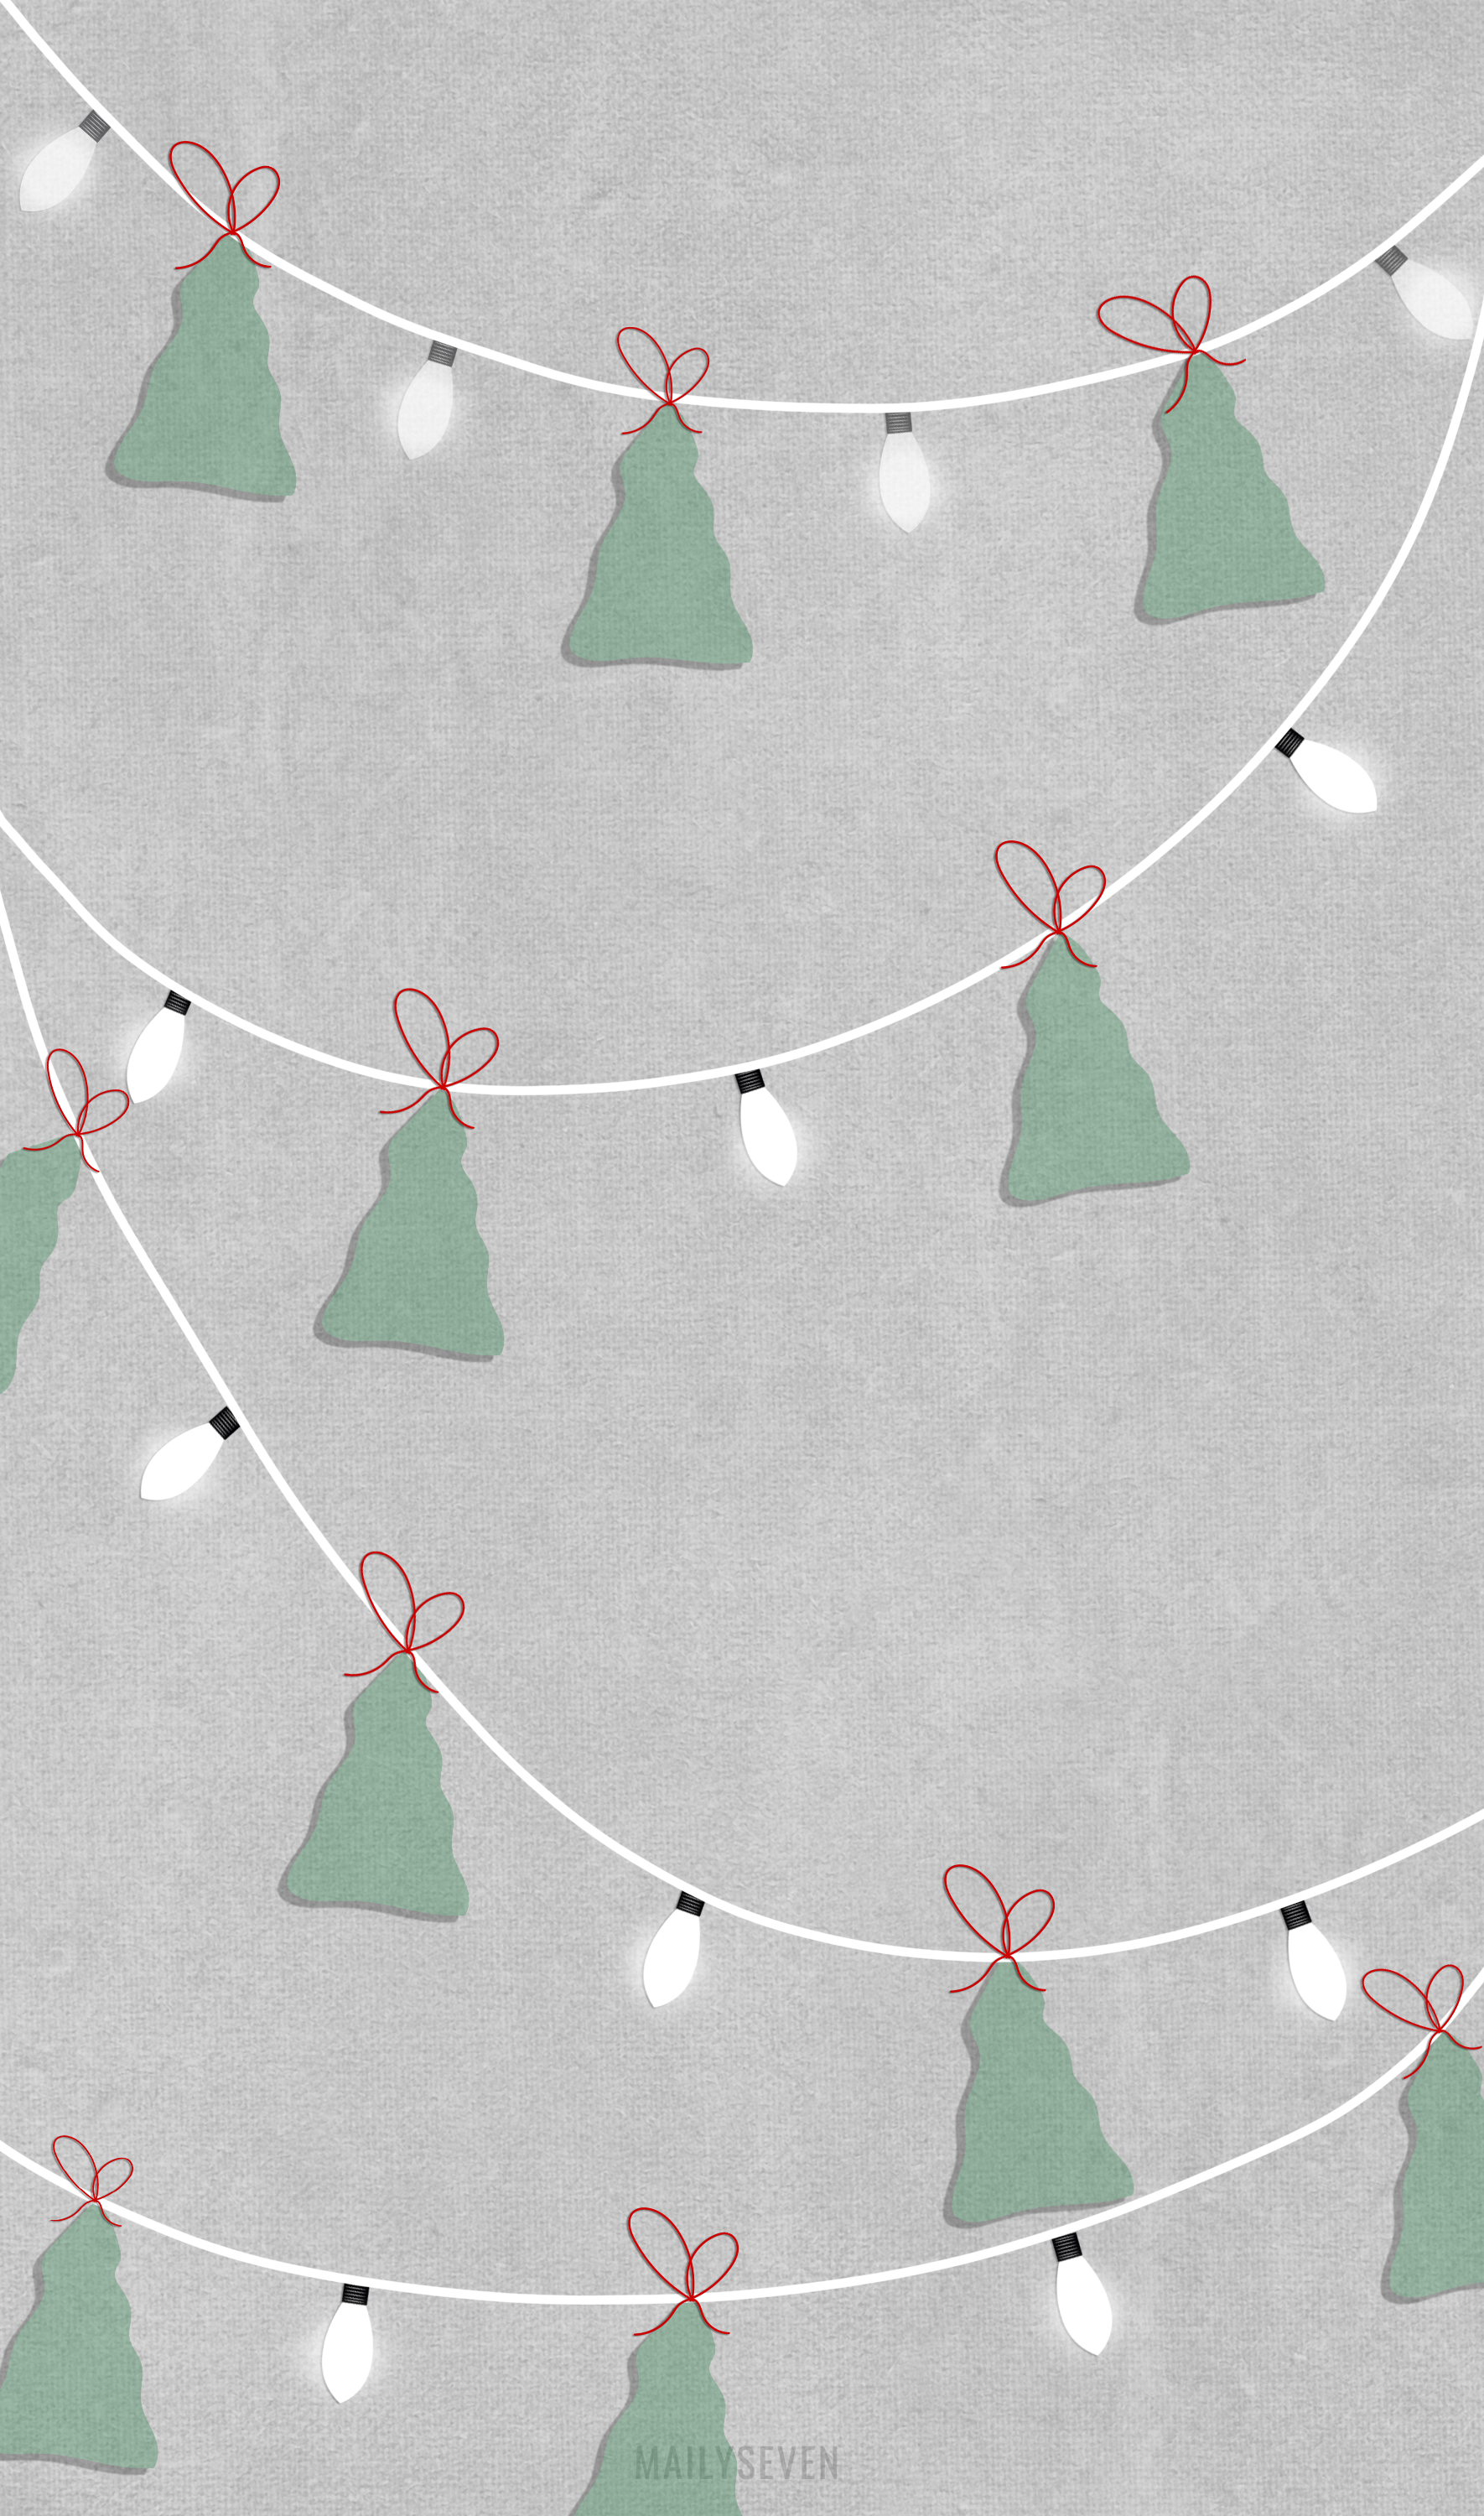 XMAS TREE GARLAND WALLPAPER. Fond d'écran de téléphone sur le thème de noël ! /. Christmas phone wallpaper, Wallpaper iphone christmas, Cute christmas wallpaper